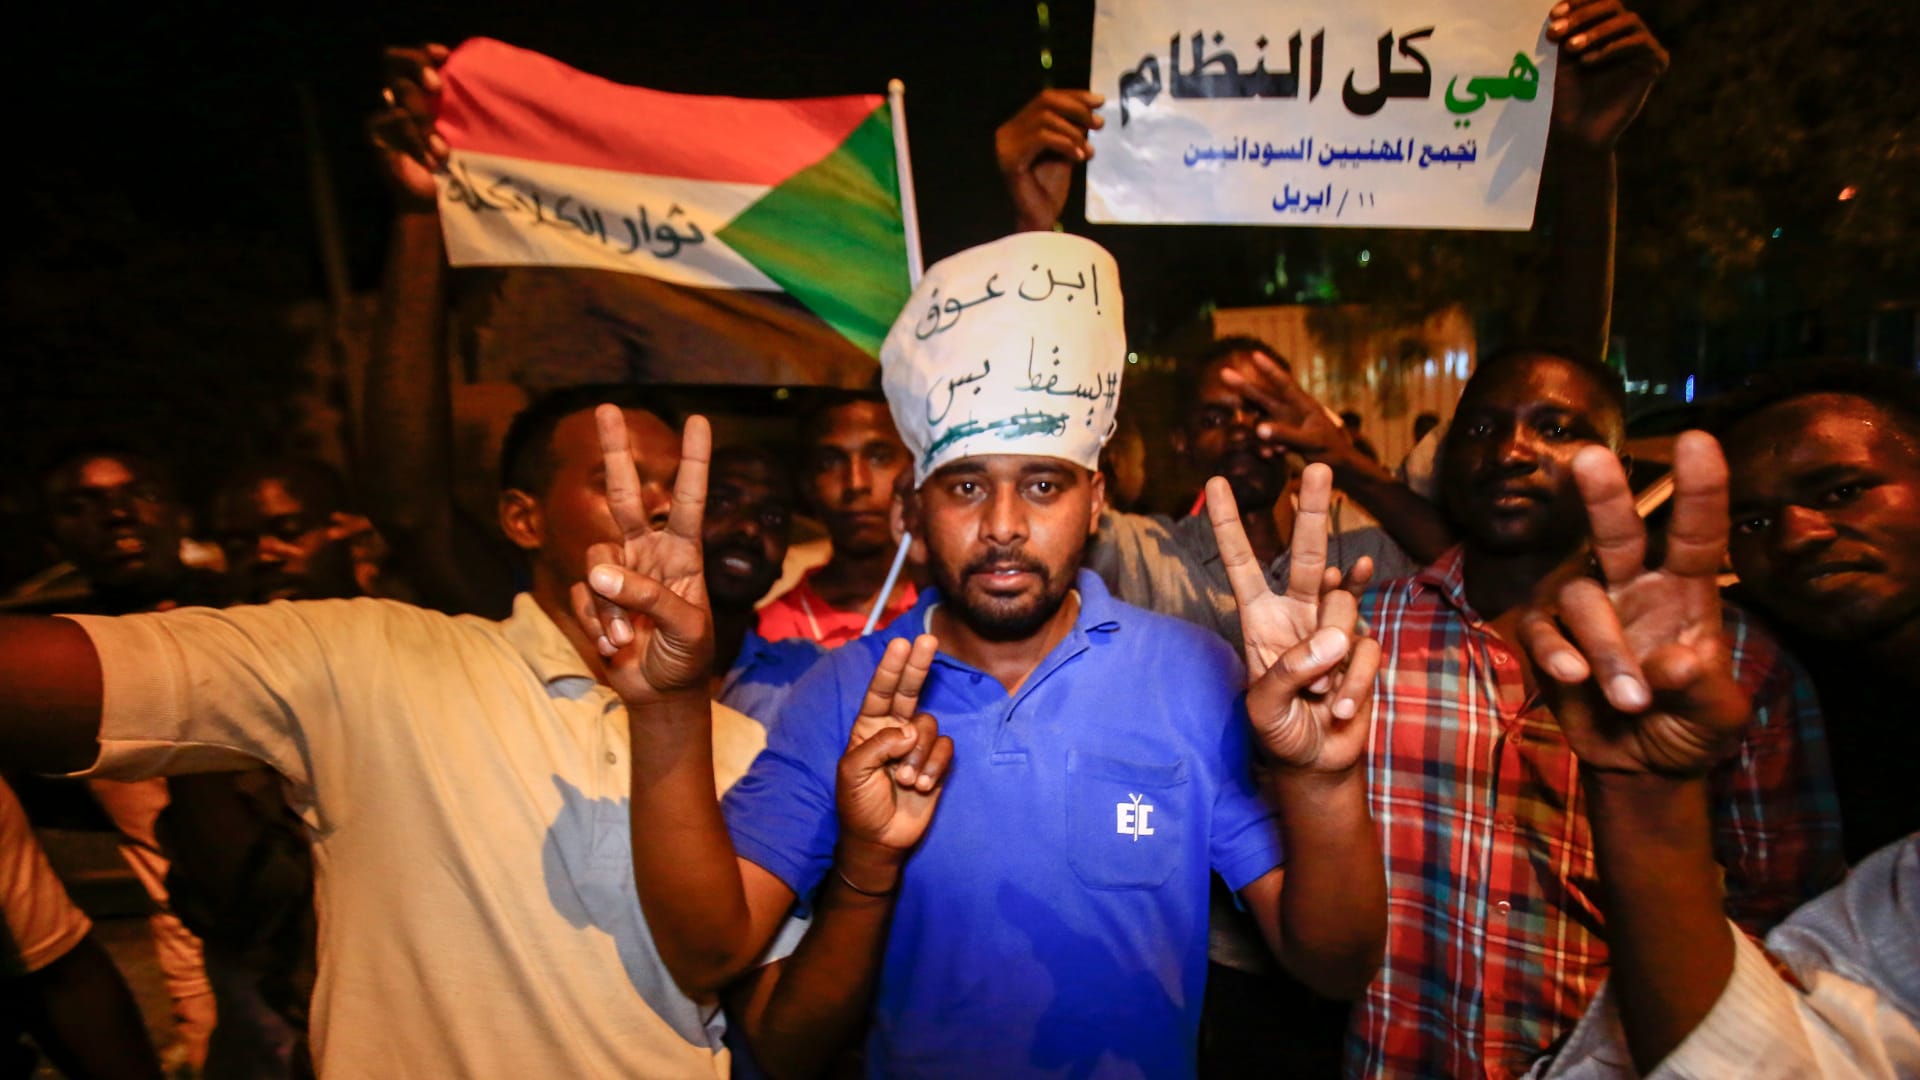 سودانيون يحتجون ضد وزير الدفاع بعد الانقلاب: تسقط بس